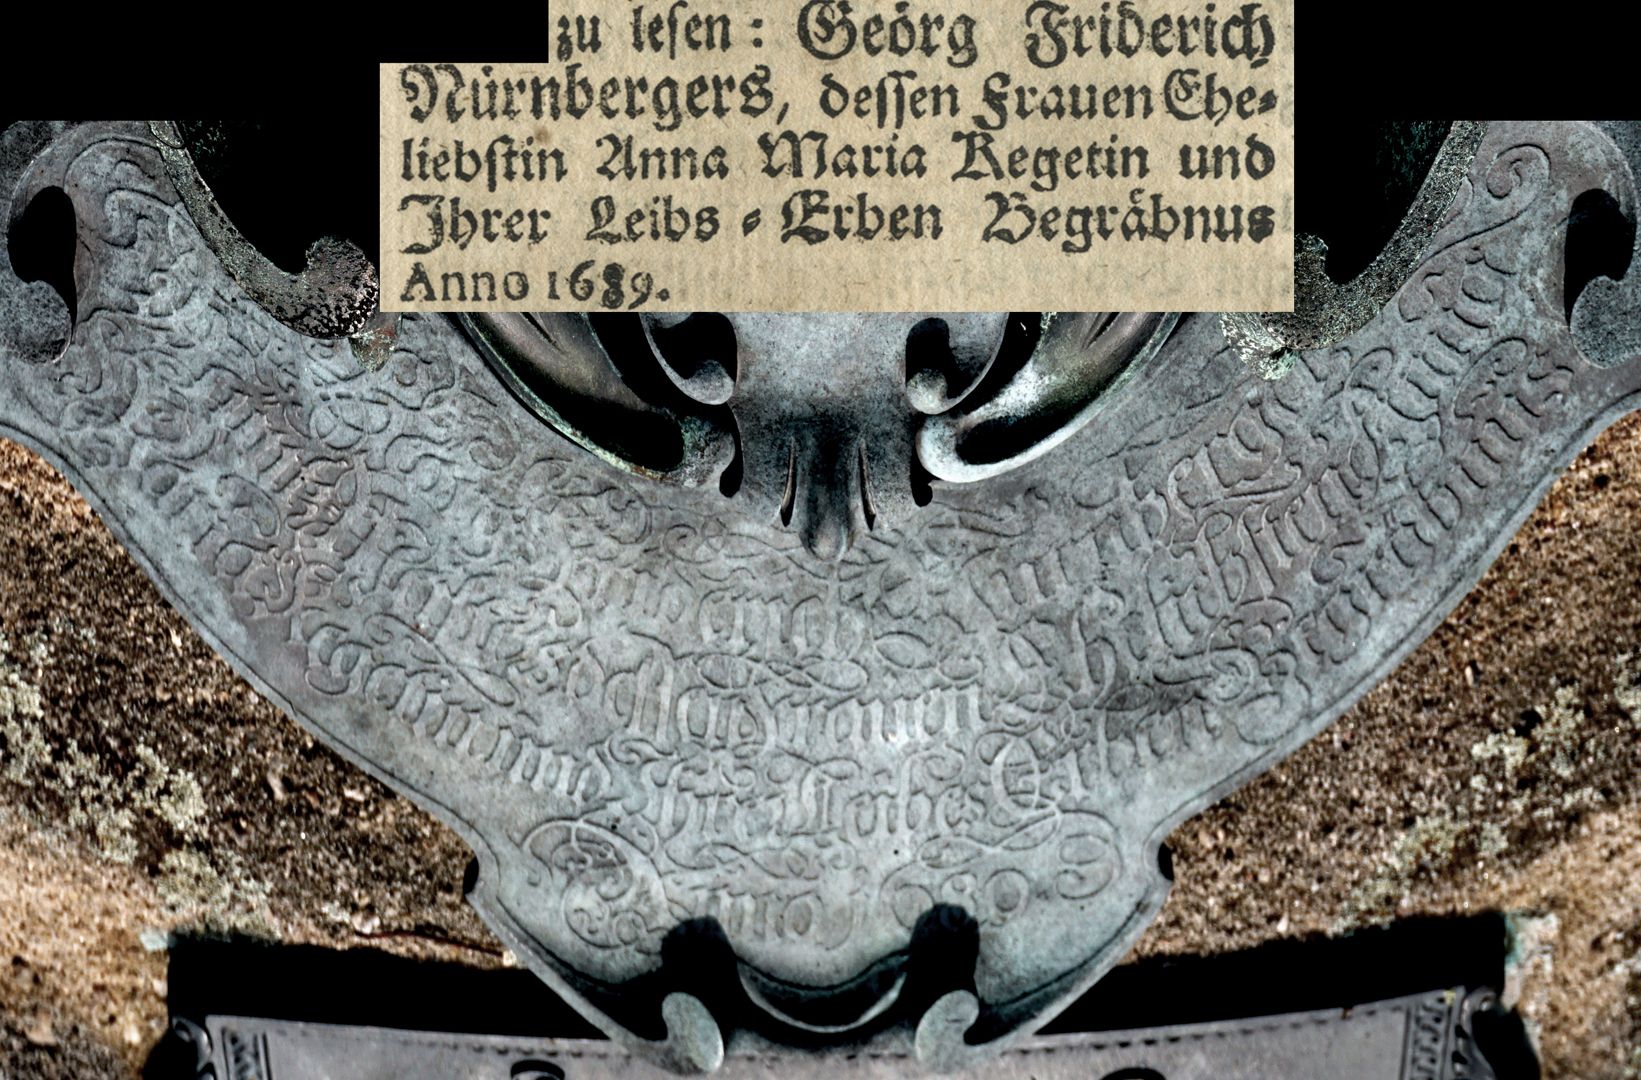 Epitaph des Georg Friederich Nürnberger "Unter dem Wappen gibt ein fliegender breiter Zettel zu lesen":